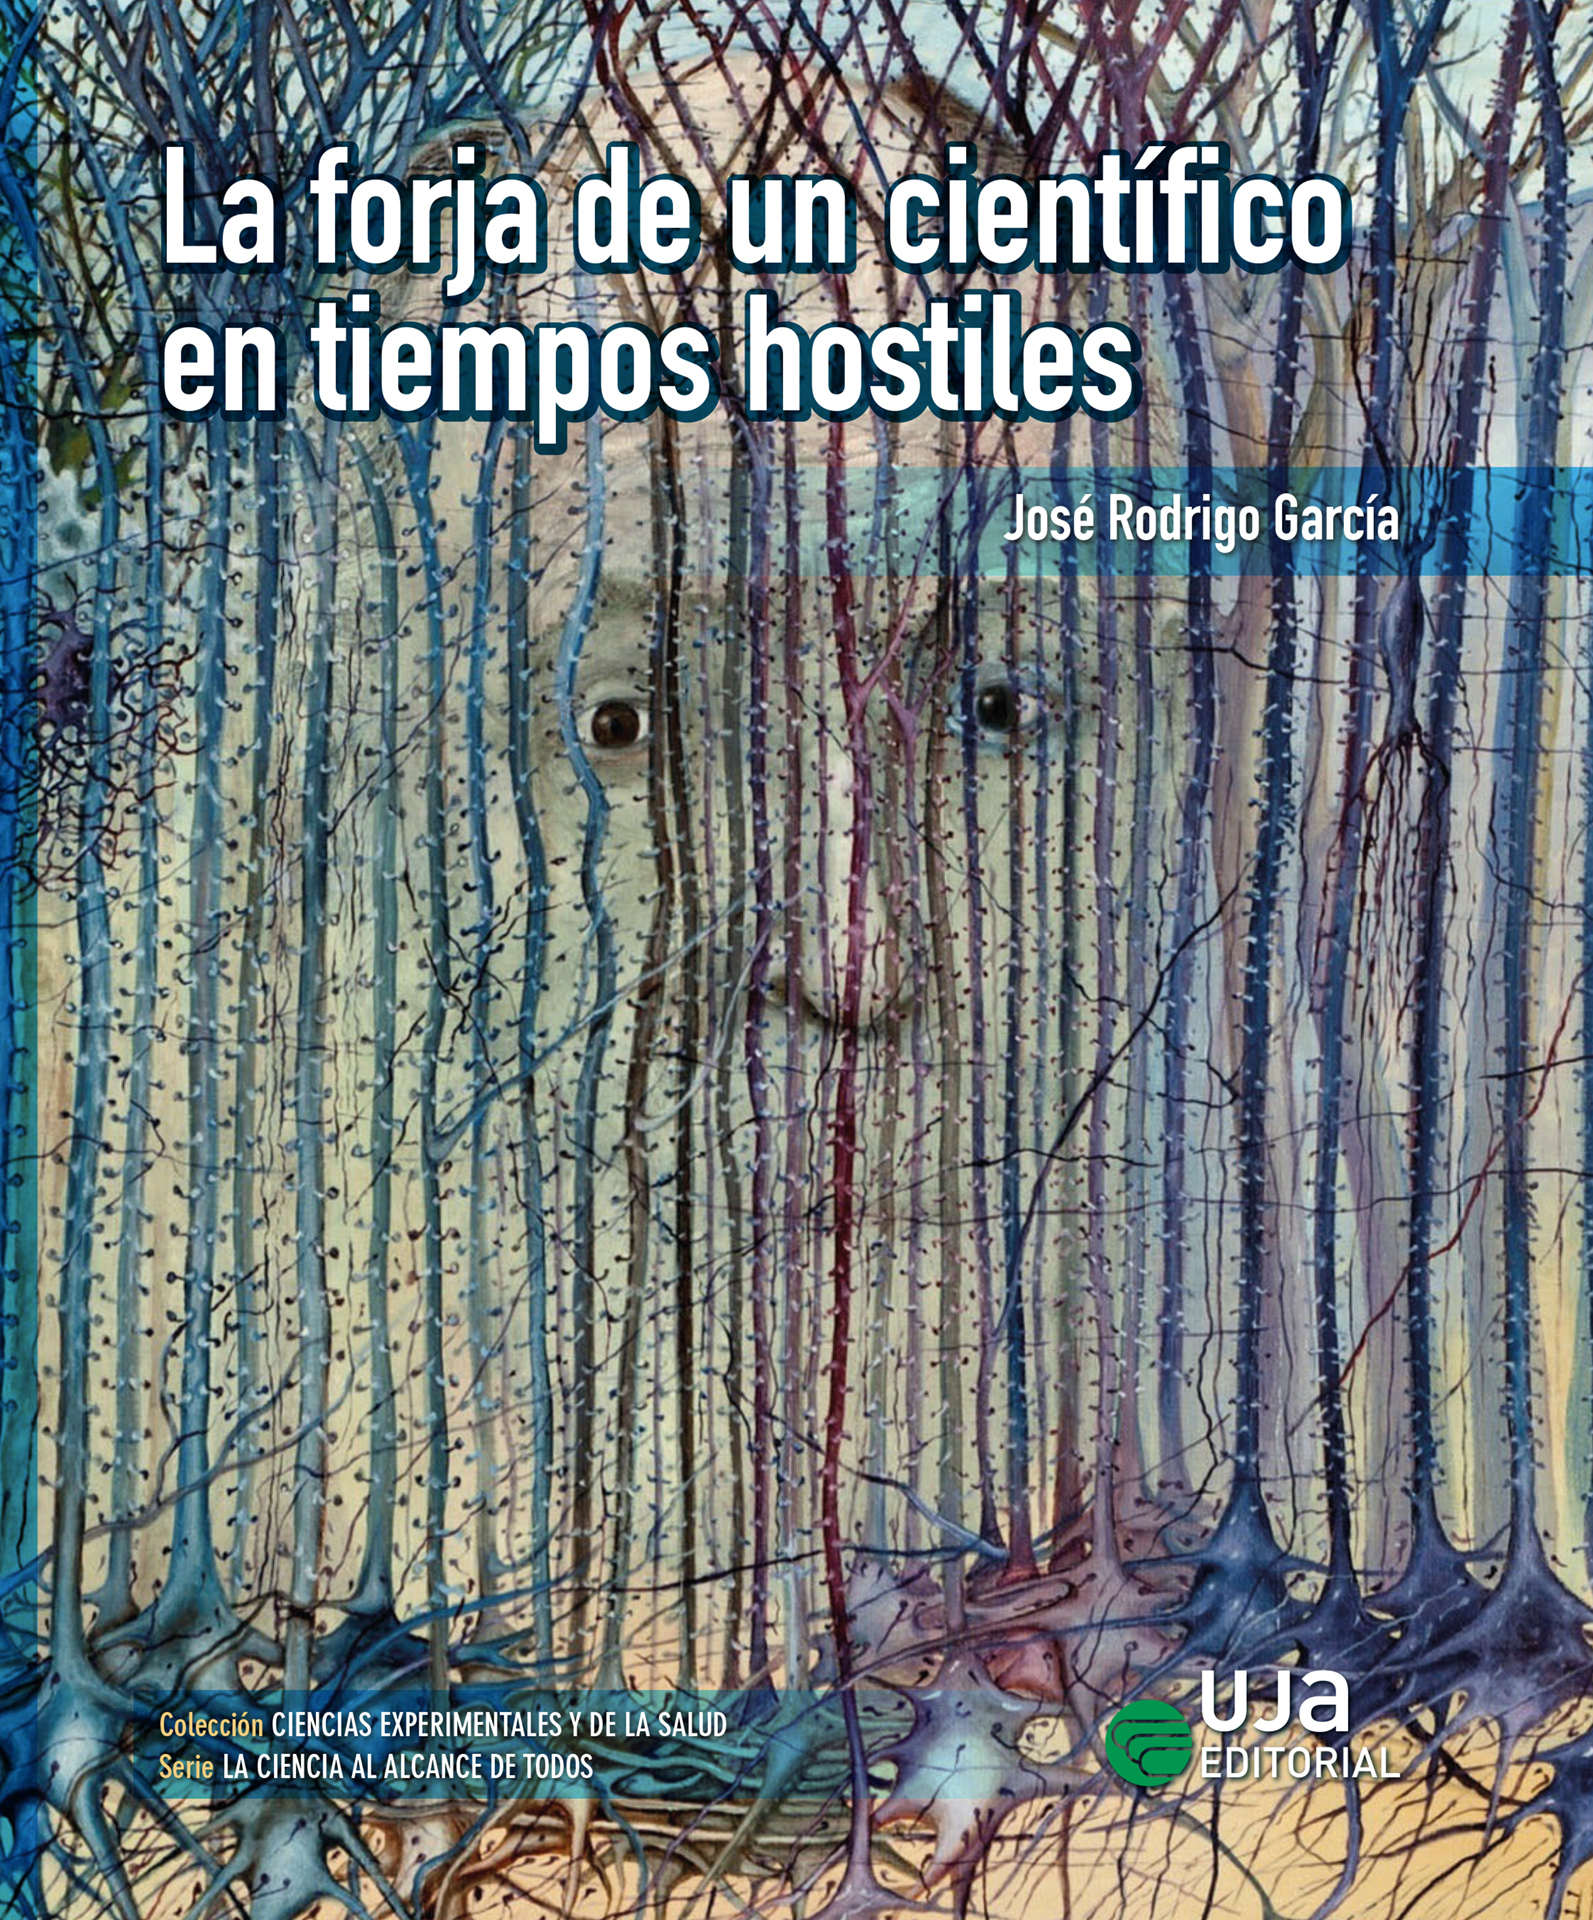 Imagen de portada del libro La forja de un científico en tiempos hostiles